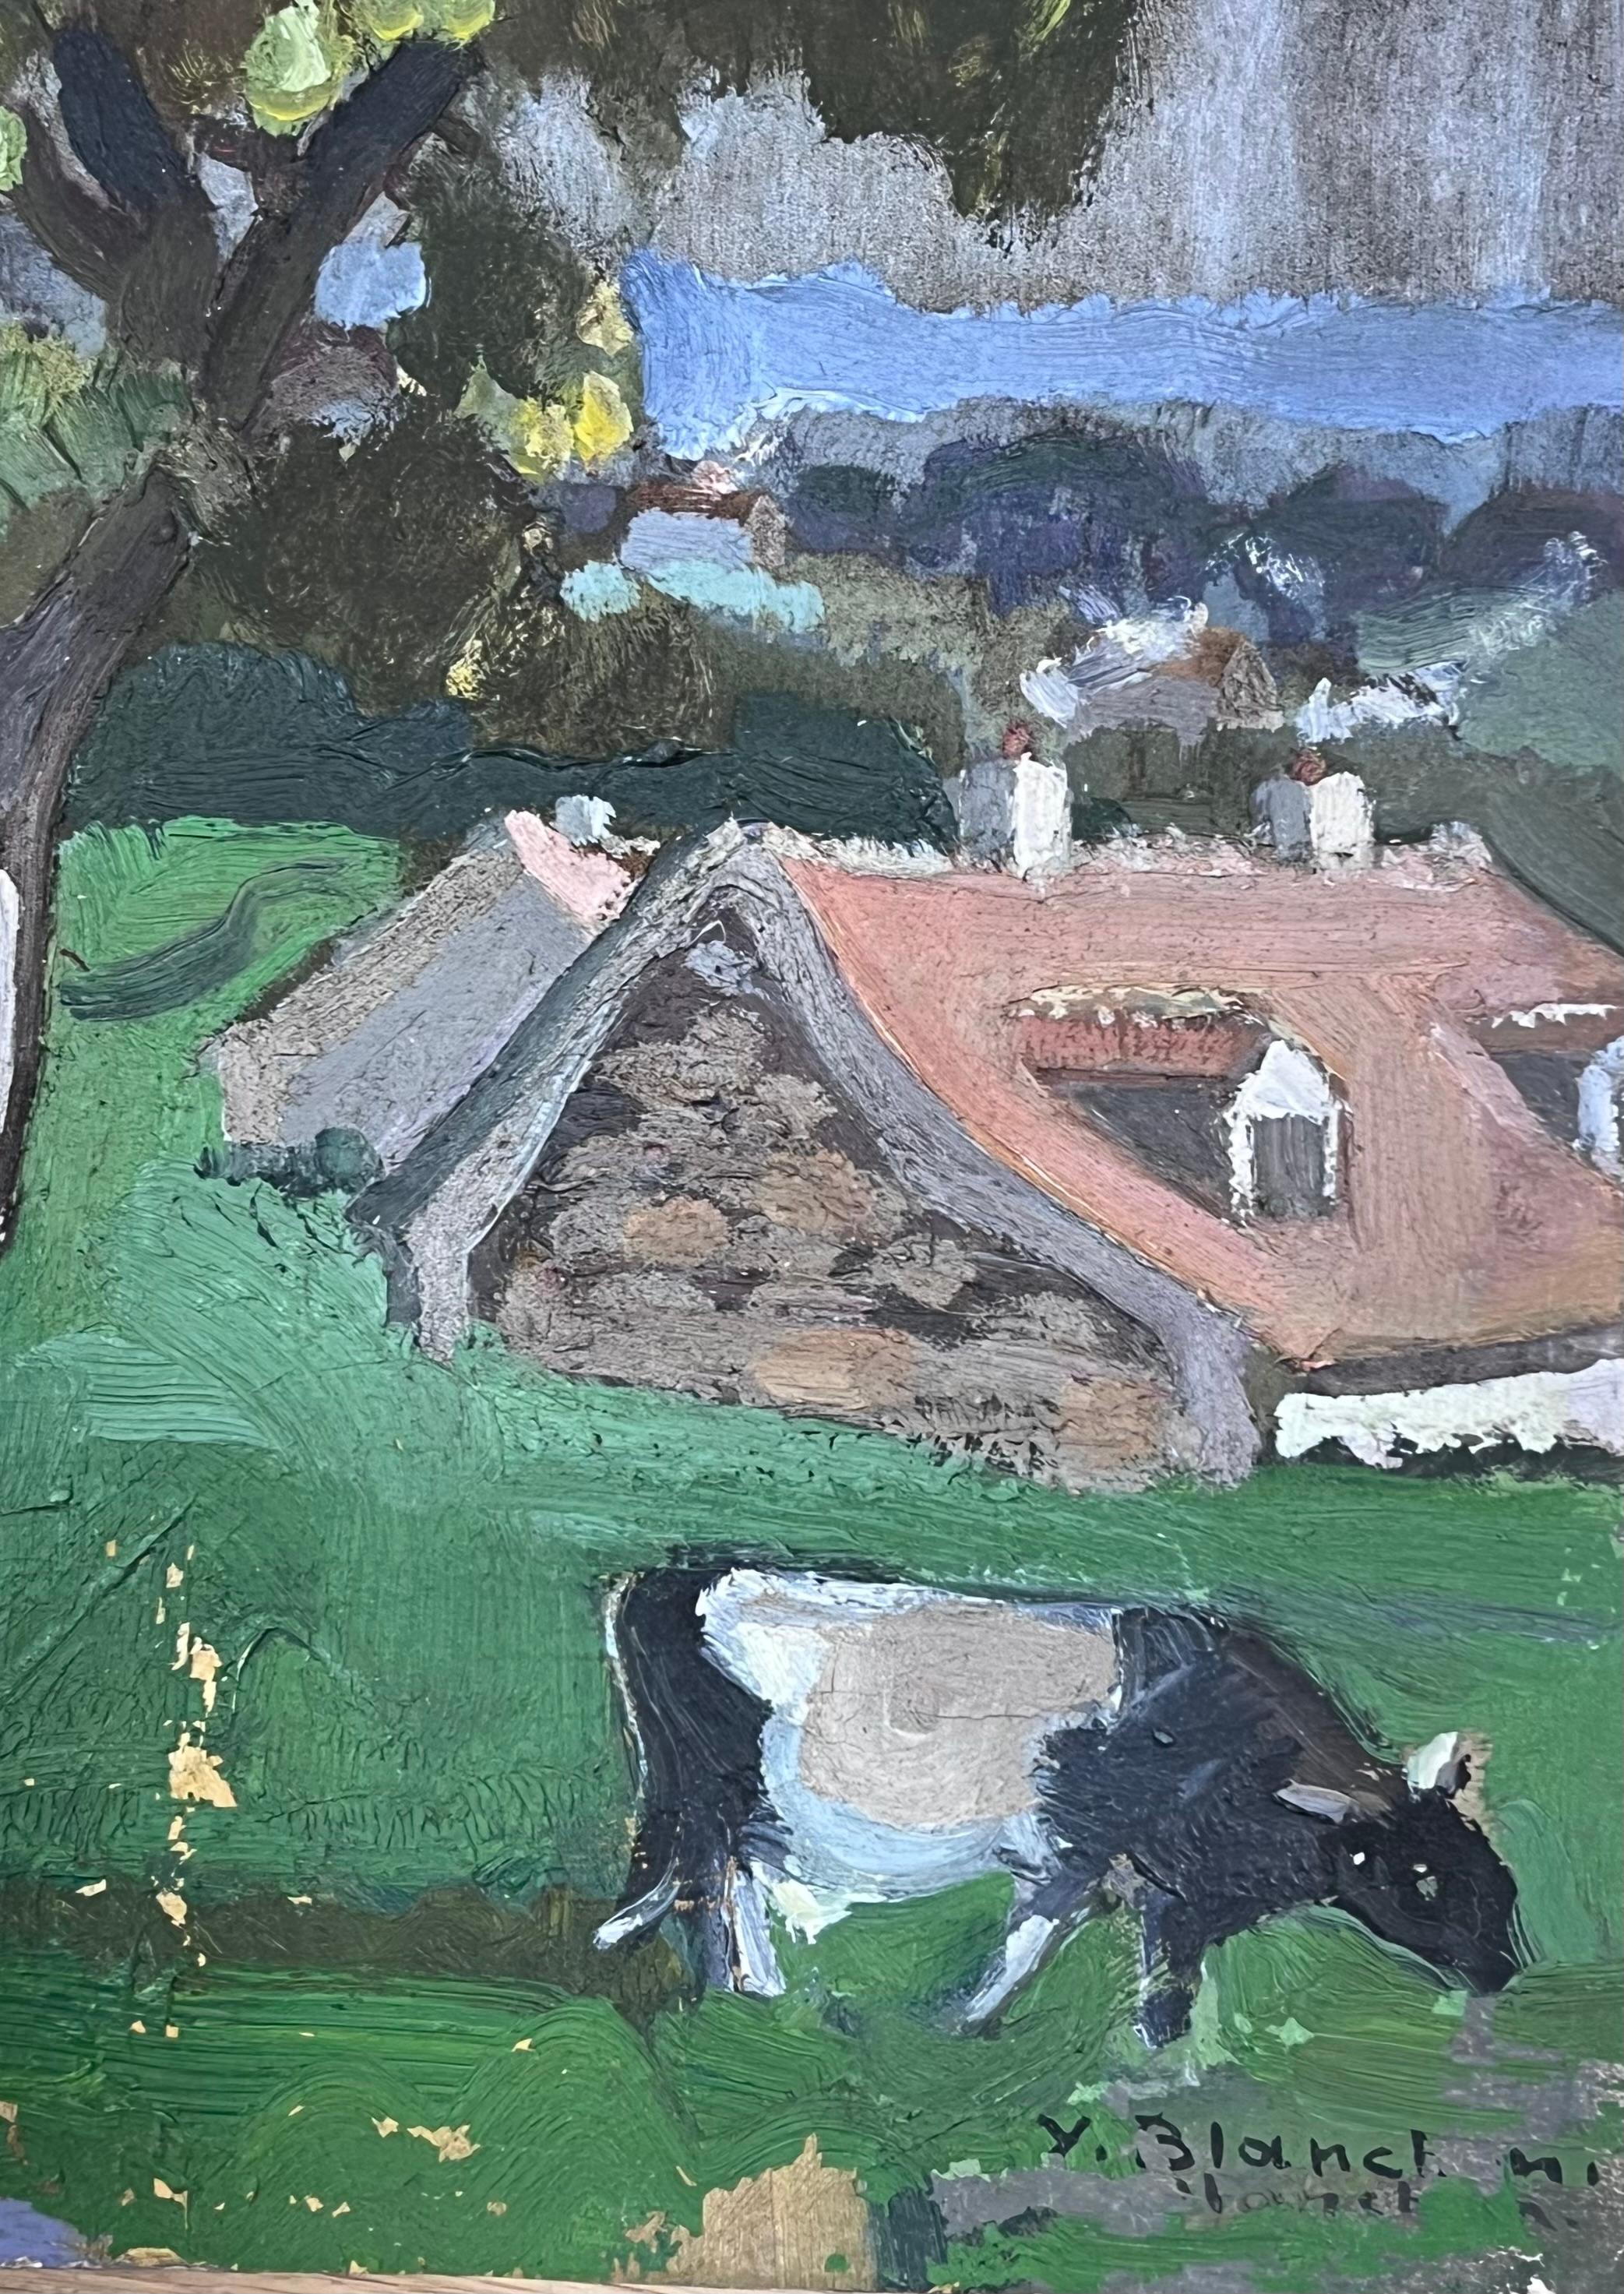 Wiese Landschaft
signiert von Y. Blanchon, französischer Impressionist der 1950er Jahre 
Künstleröl auf Künstlerpapier, ungerahmt
Gemälde: 16,5 x 13 Zoll
Provenienz: aus einer großen Privatsammlung dieses Künstlers in Nordfrankreich
Zustand: